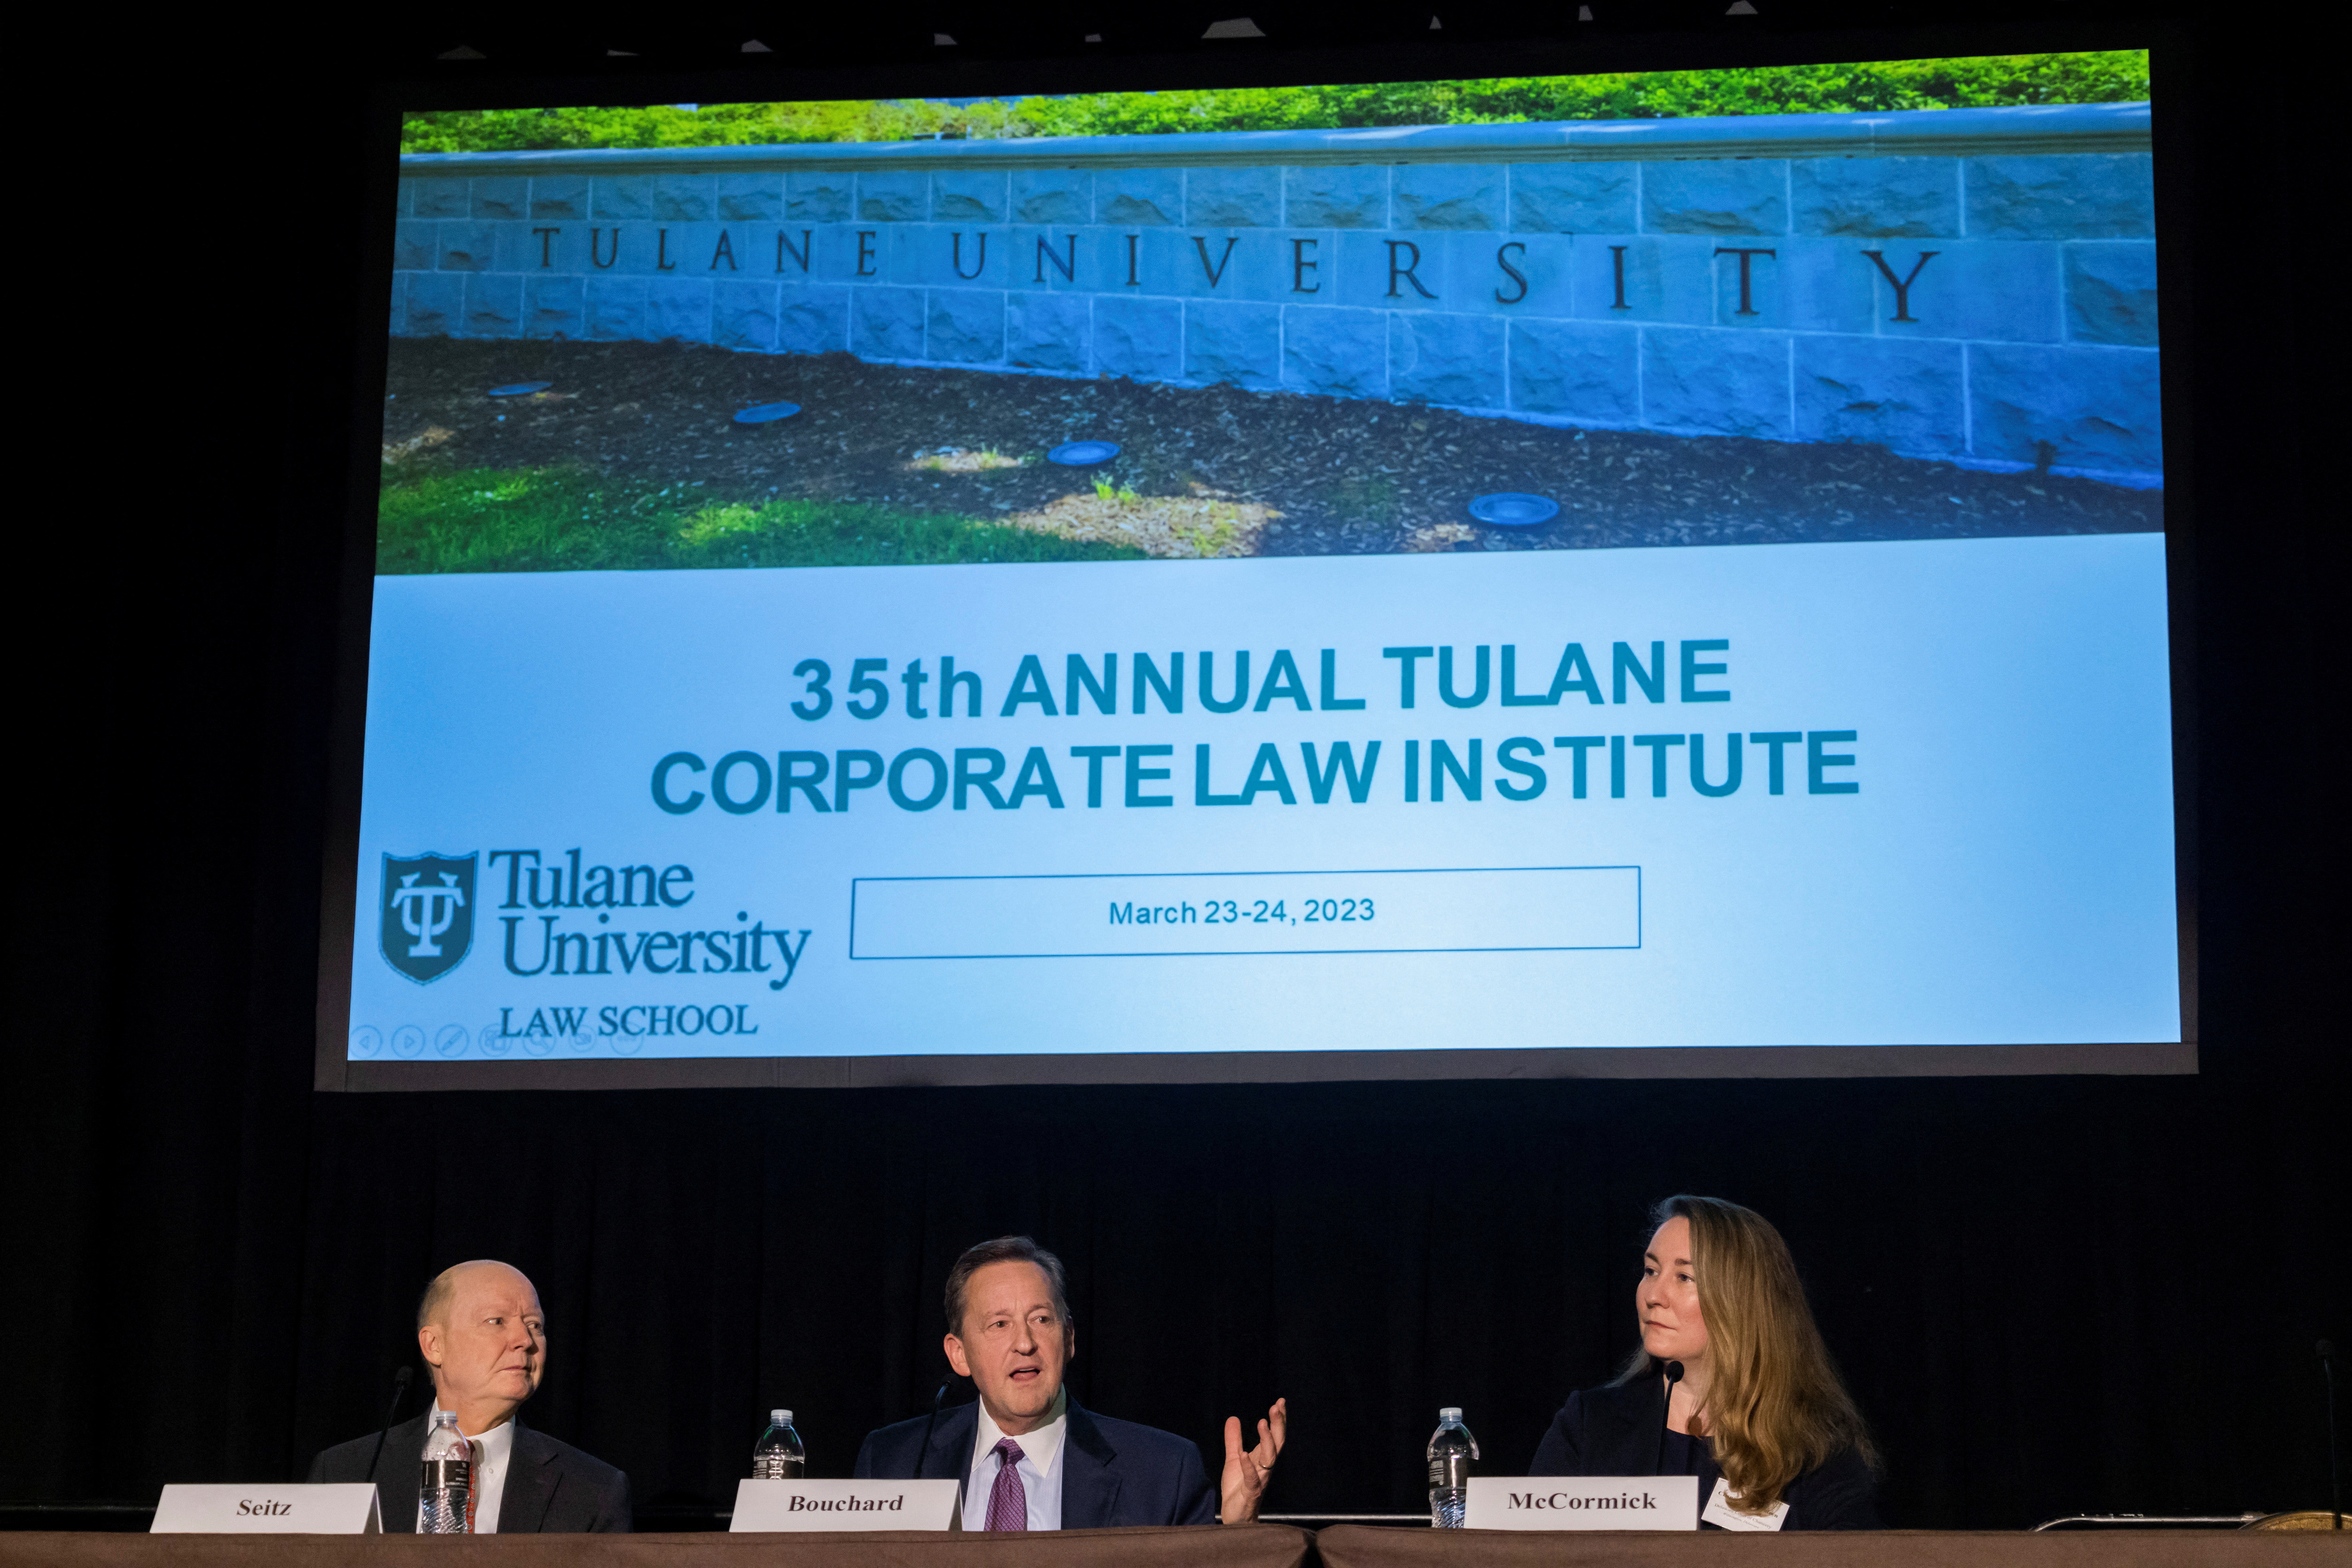 35th Annual Tulane Corporate Law Institute